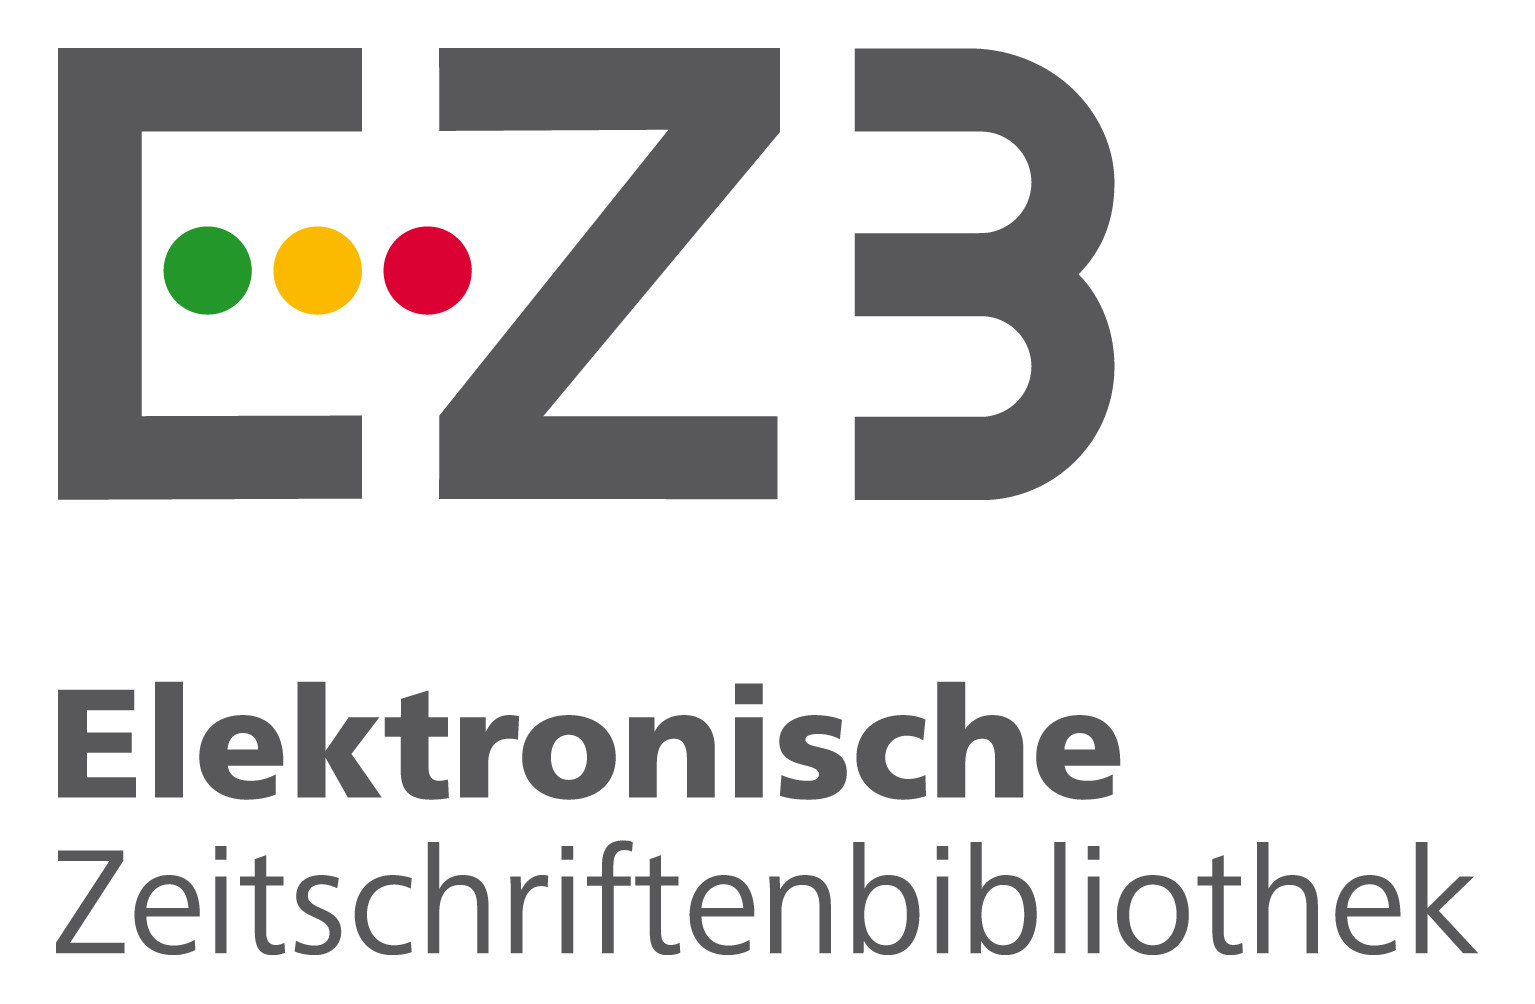 Elektronische_Zeitschriftenbibliothek_(Logo).jpeg